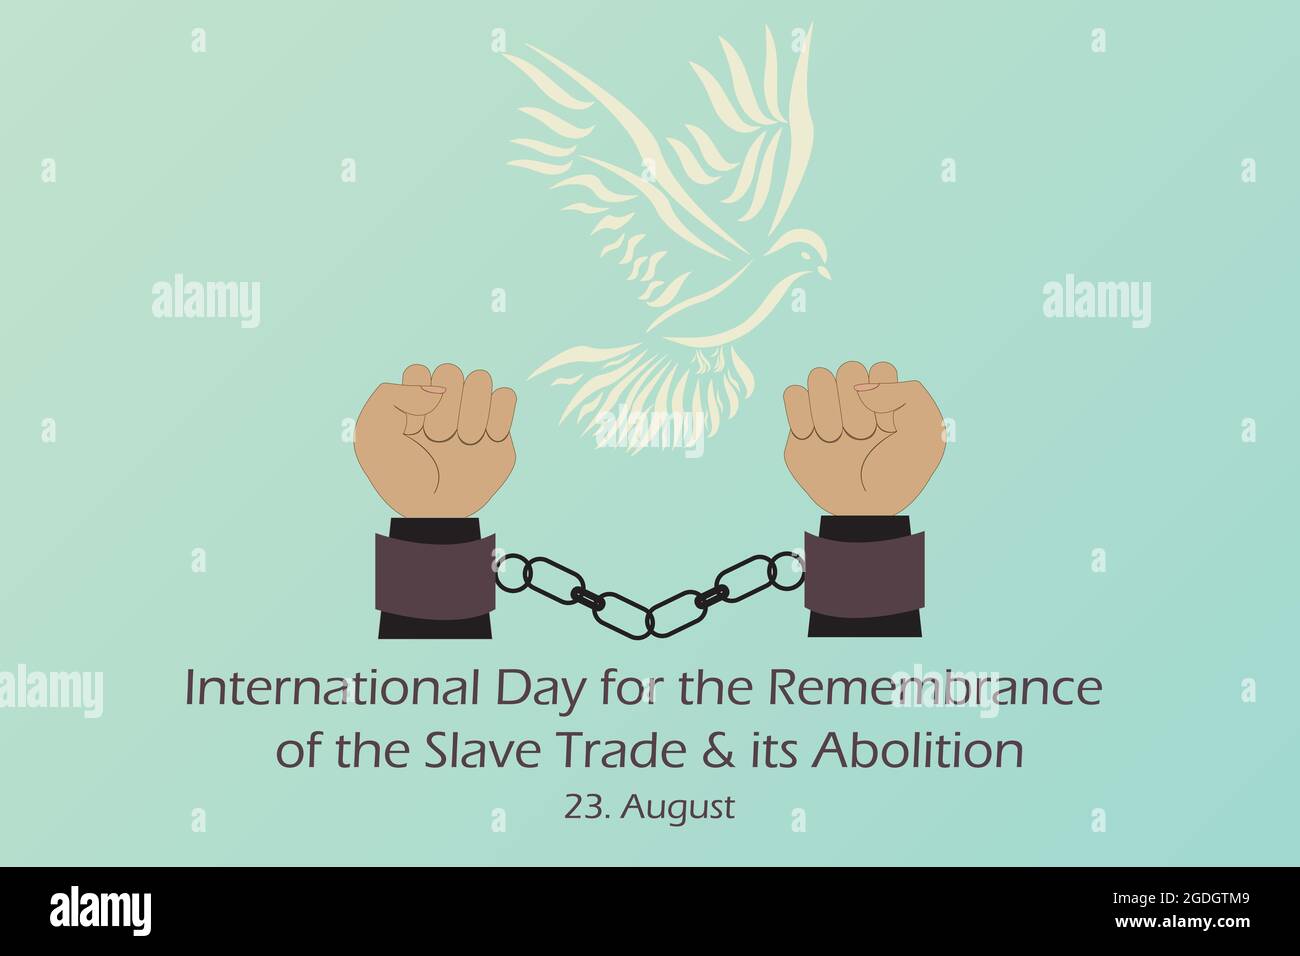 Dessin de deux mains manillées et de pigeon blanc symbole de liberté. Journée internationale pour le souvenir de la traite des esclaves et de son abolition. Vecteur Illustration de Vecteur